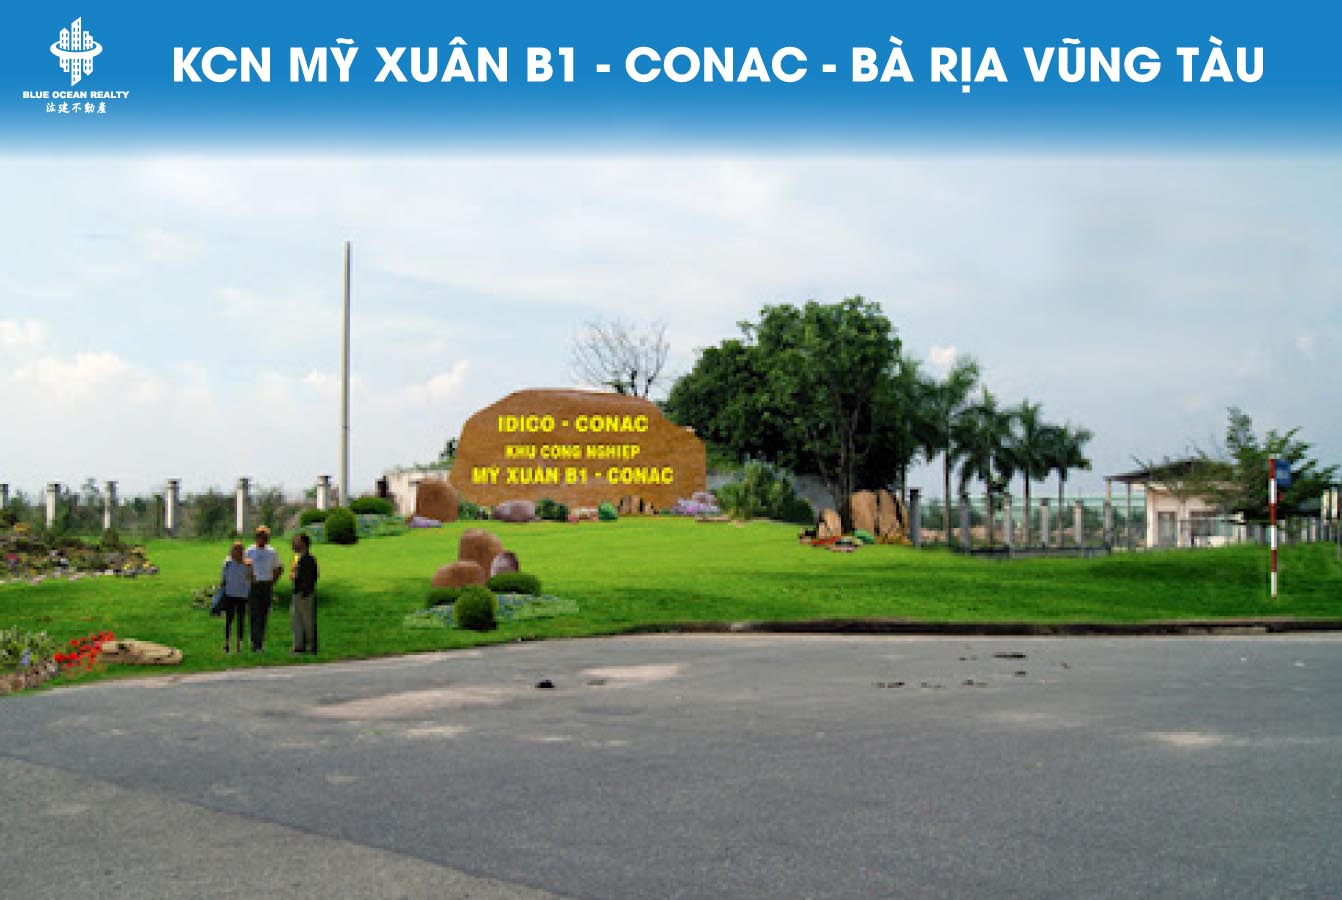 KCN Mỹ Xuân B1 - CONAC - Bà Rịa Vũng Tàu